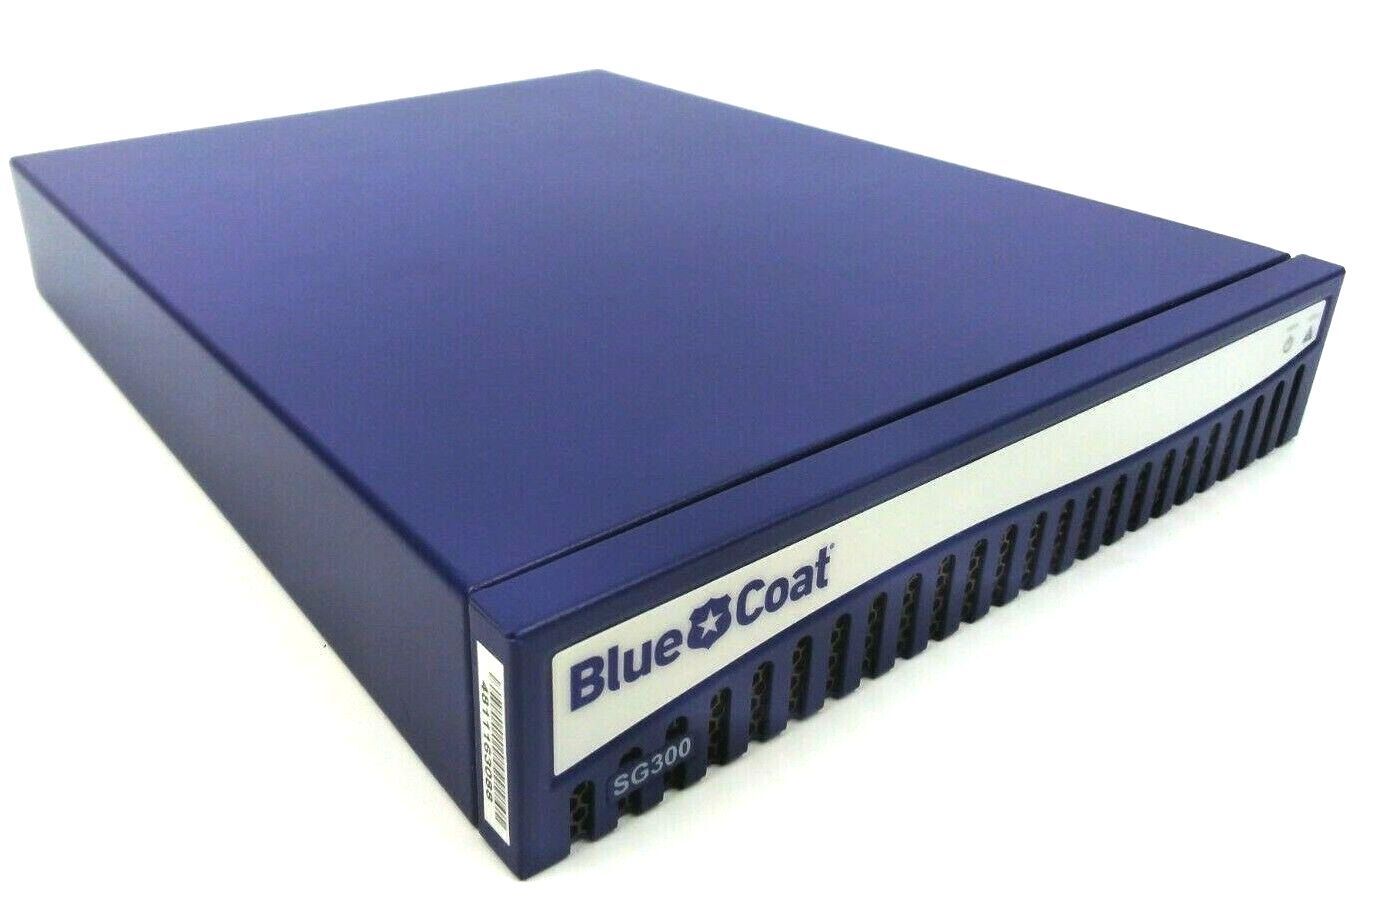 Blue Coat SG300 Secure Gateway Security Appliance SG300-10-M5